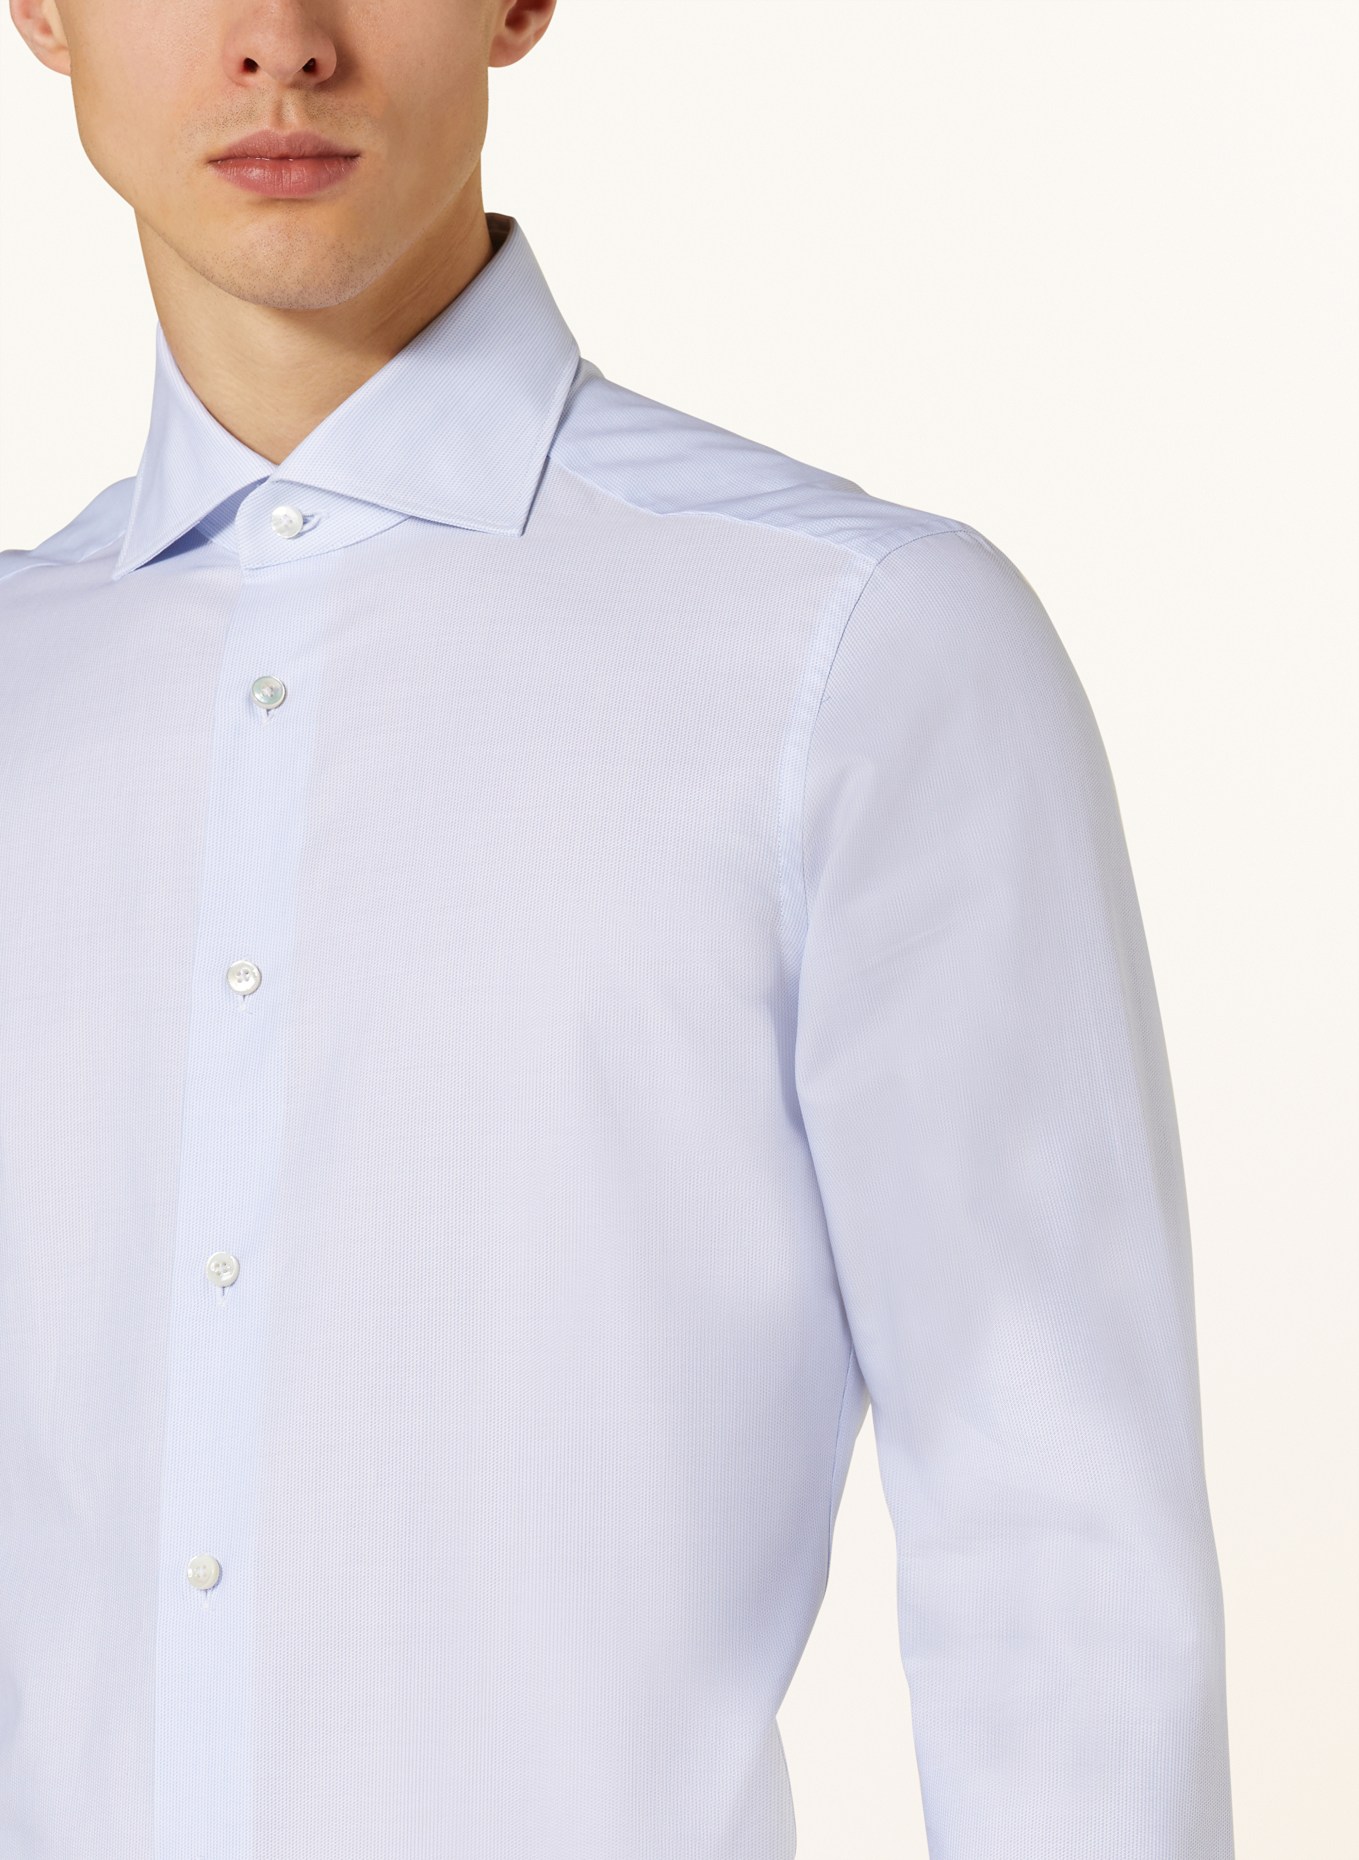 ZEGNA Shirt regular fit, Color: LIGHT BLUE (Image 4)